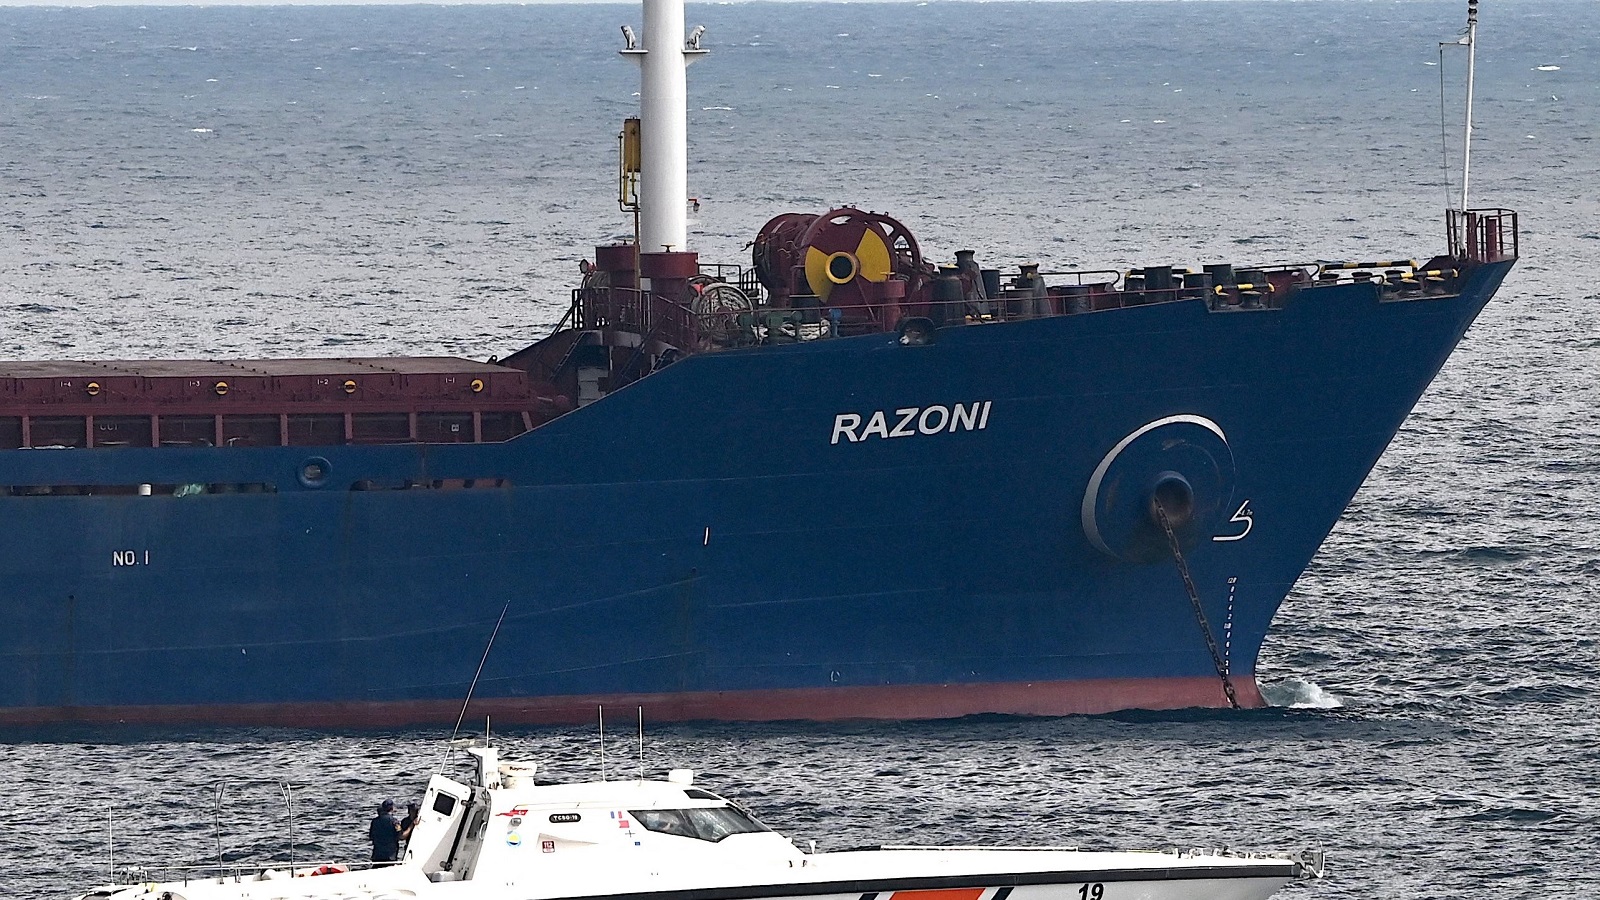 السفينة "رازوني" مشتّتة: صاحب شحنة الذرة رفض تسلمها